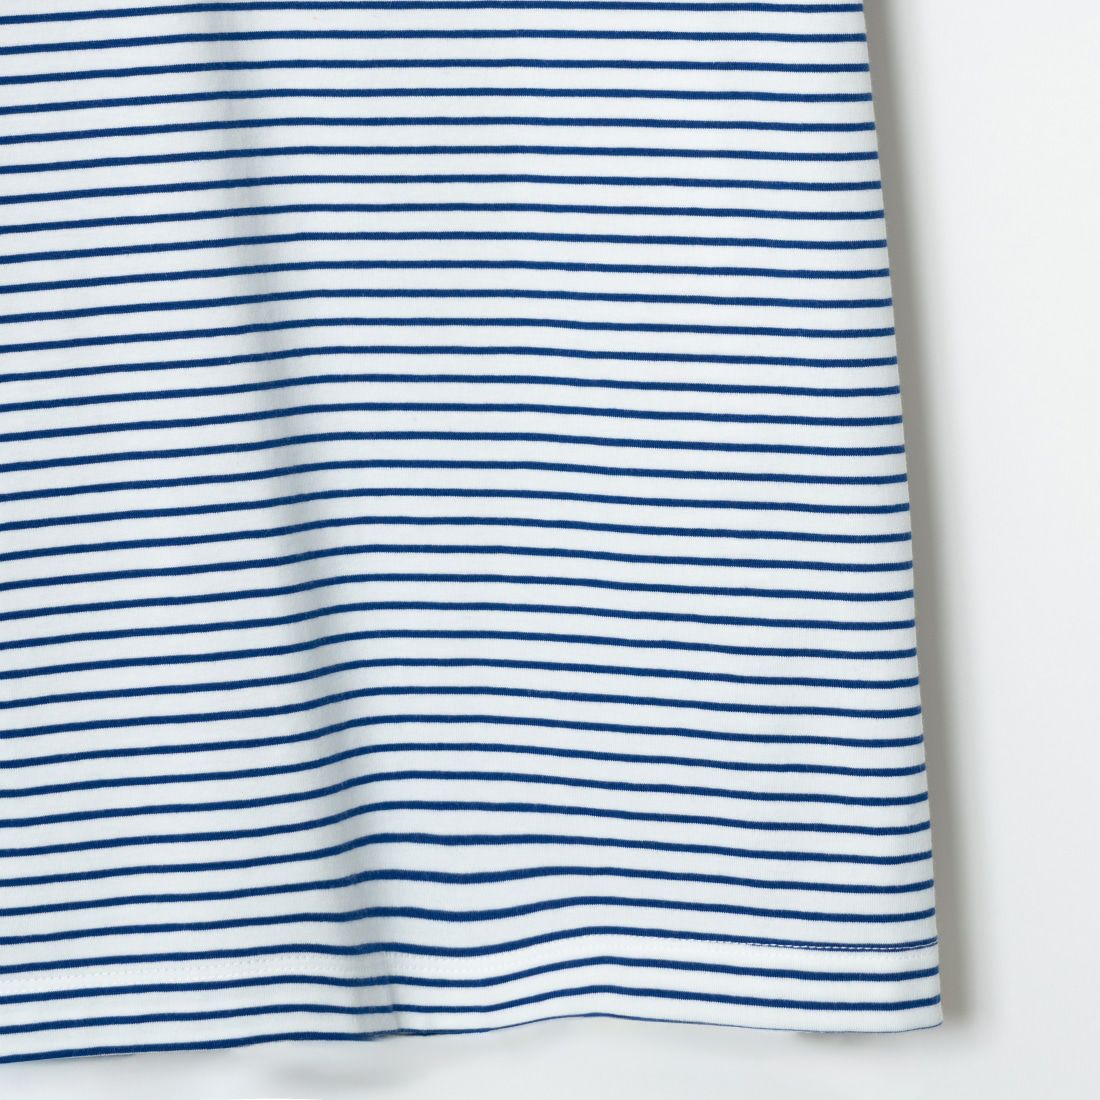 ORCIVAL [オーシバル] クルーネックボーダーTシャツ [OR-C0338CCF] WHITE/BLUE